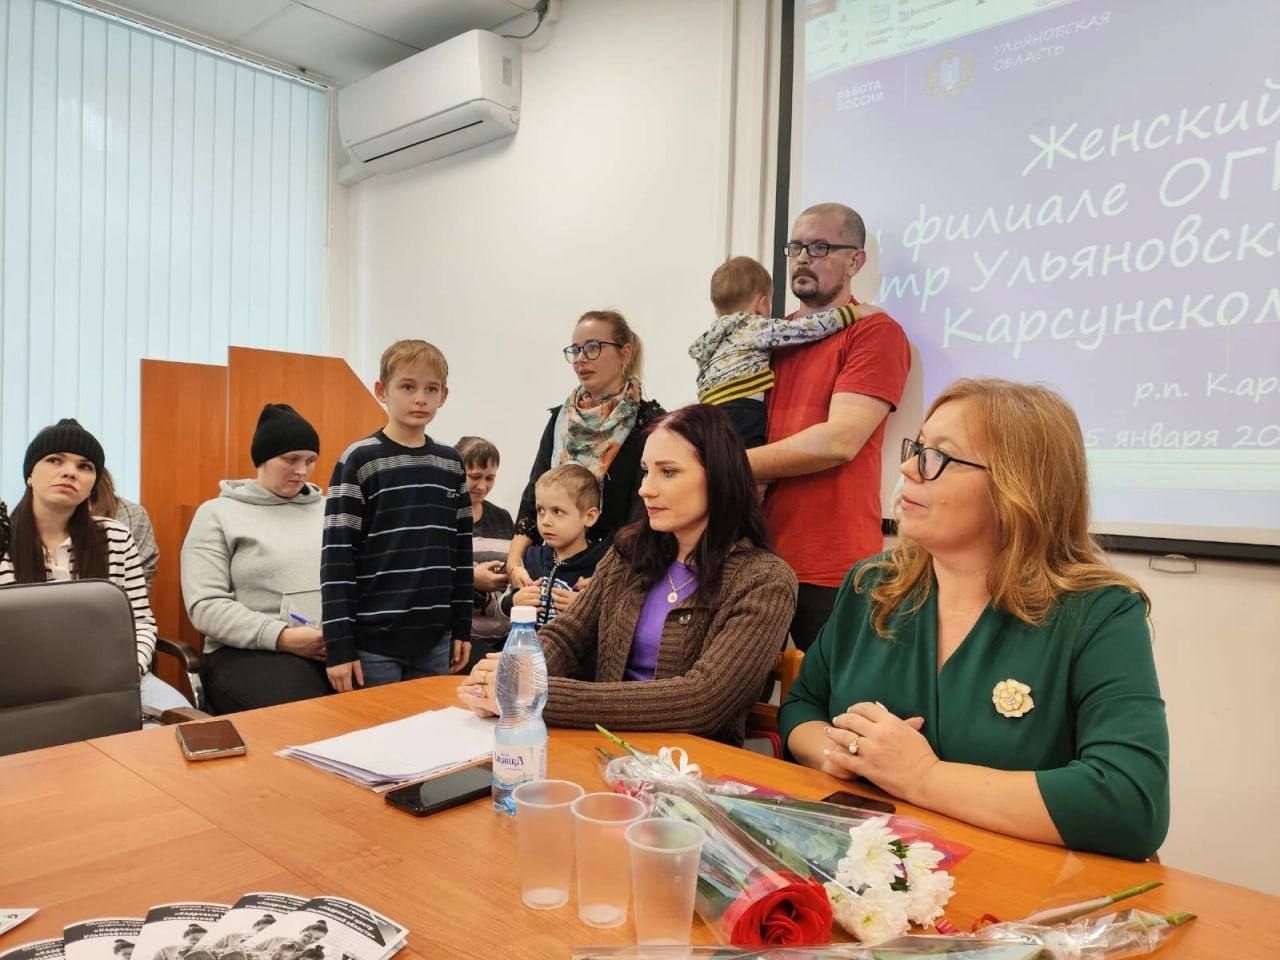 Члены Ульяновского реготделения обсудили вопросы защиты прав женщин